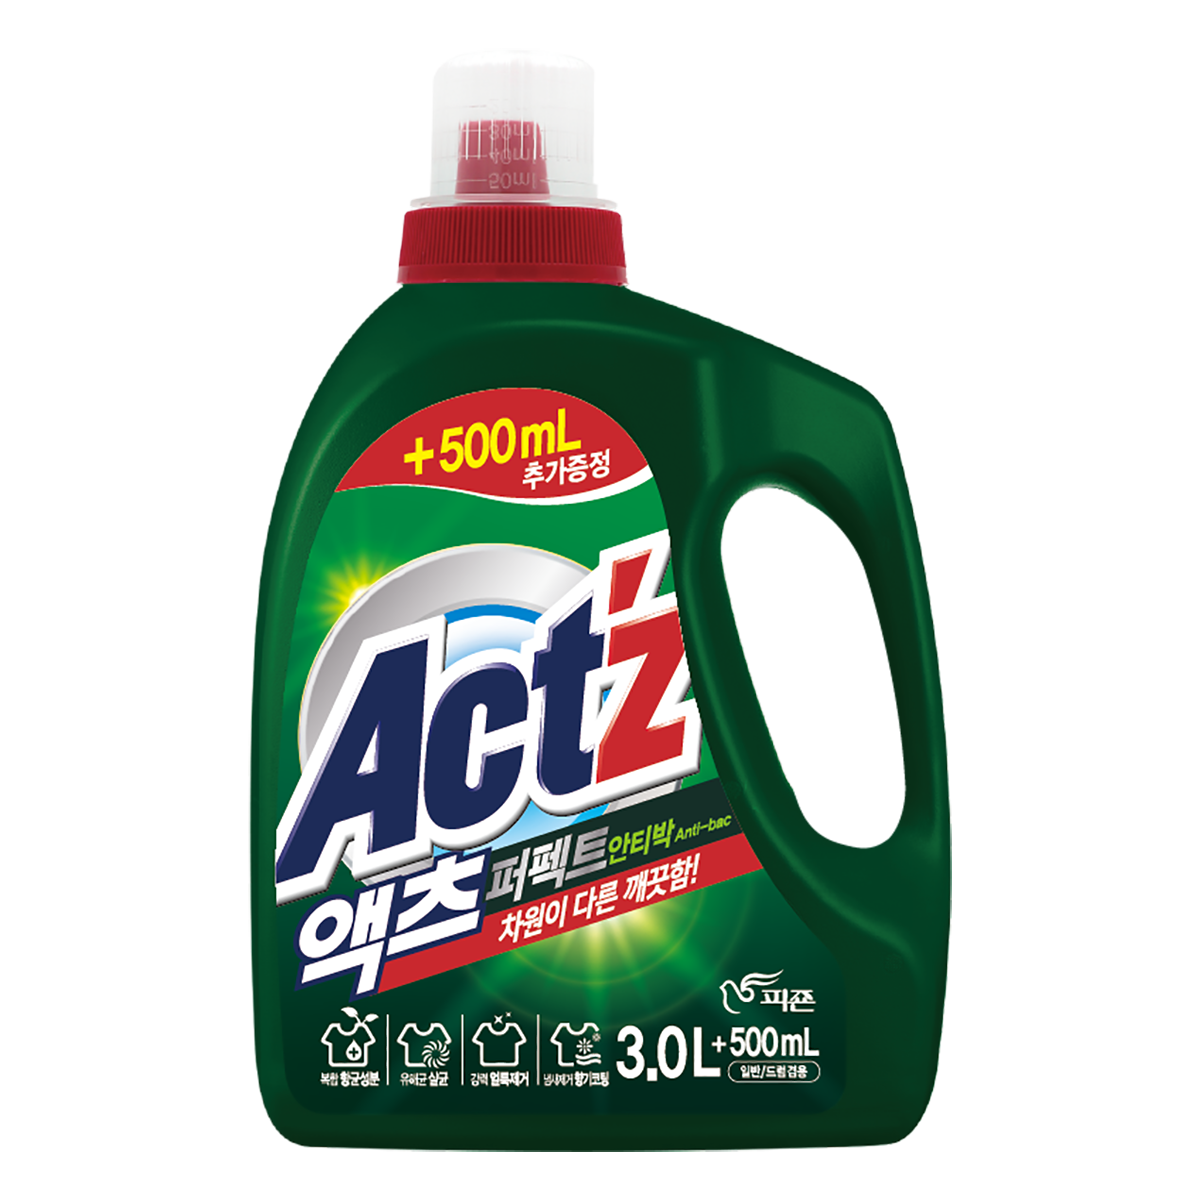 Actz бактерийн эсрэг шингэн у/нунтаг автомат 3.1л